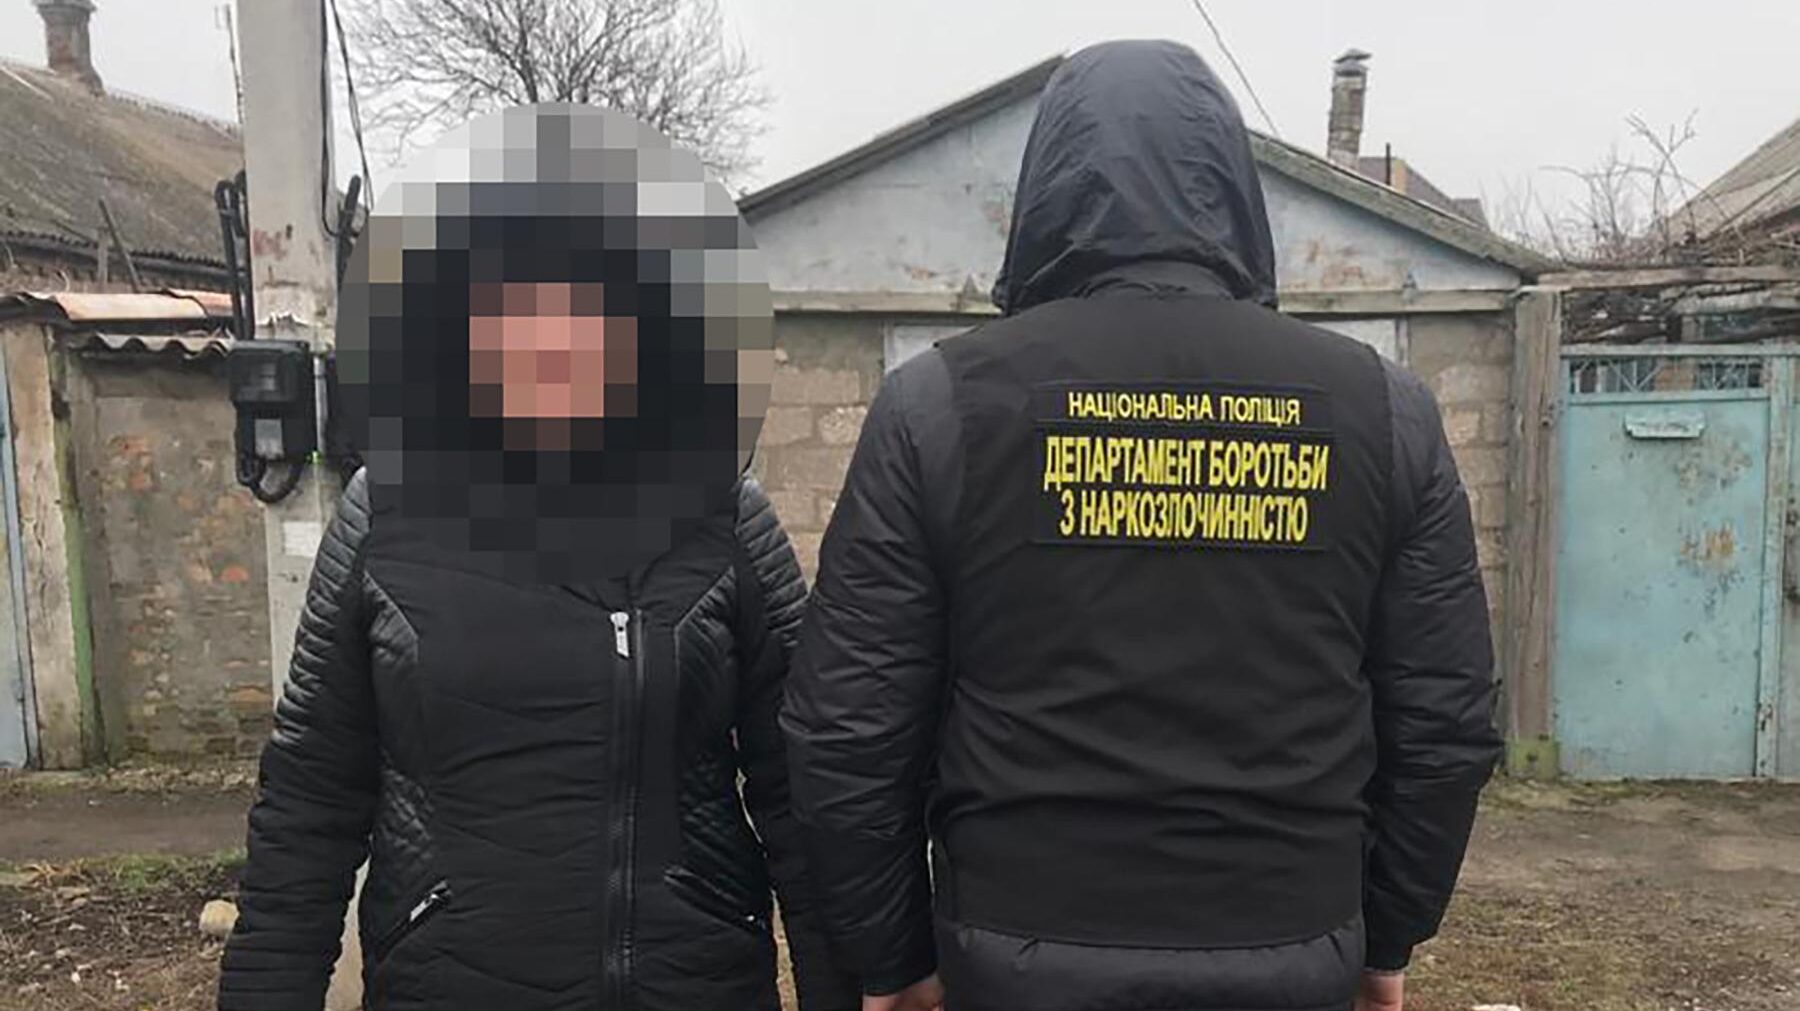 В Запорожье полиция задержала закладчицу метадона, — ФОТО